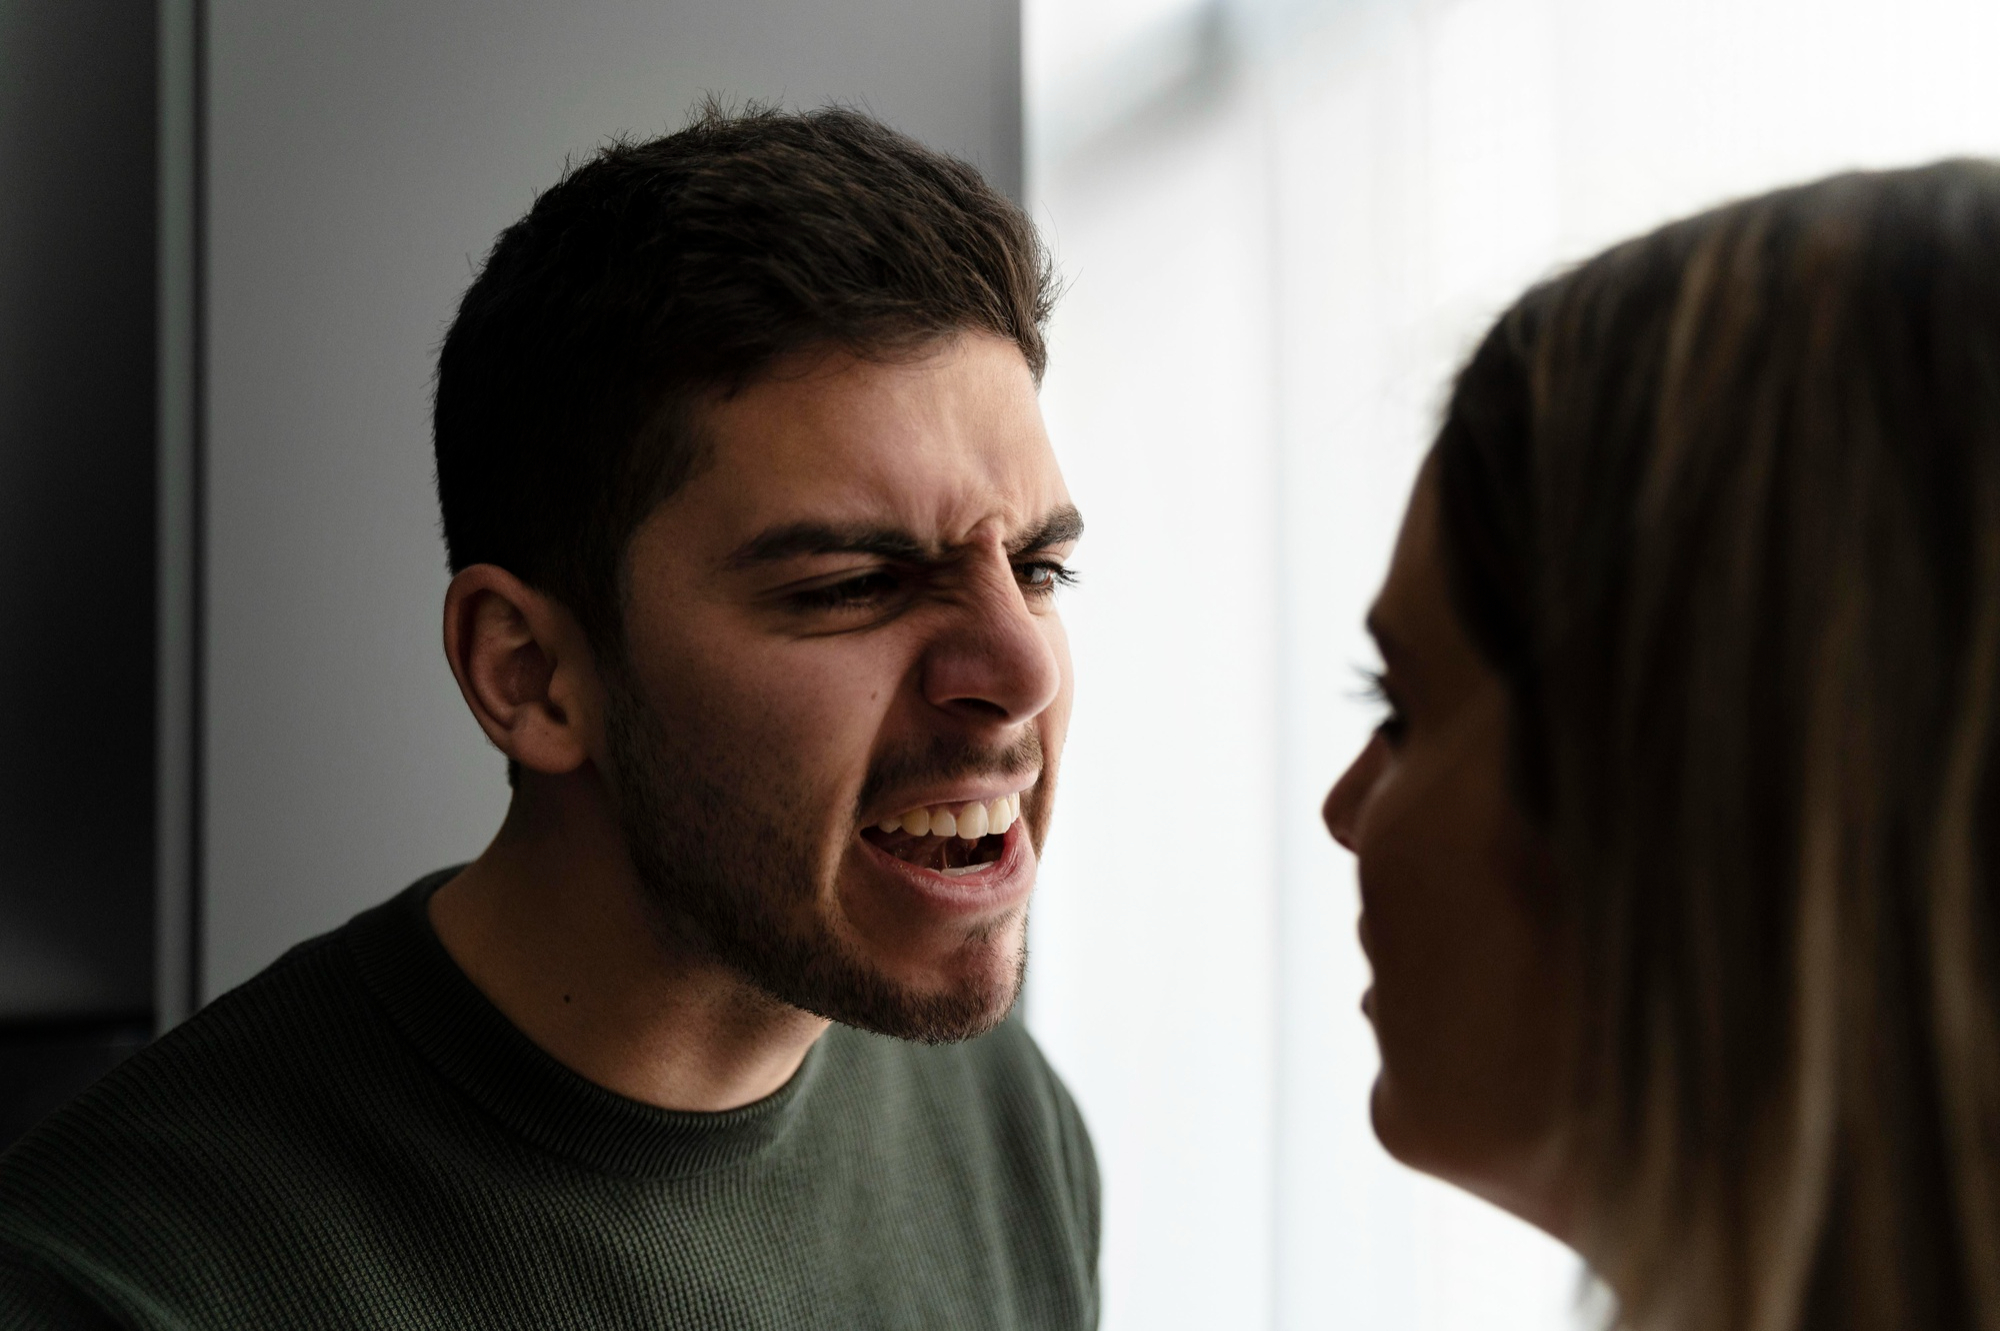 A man berating a woman | Source: Pexels